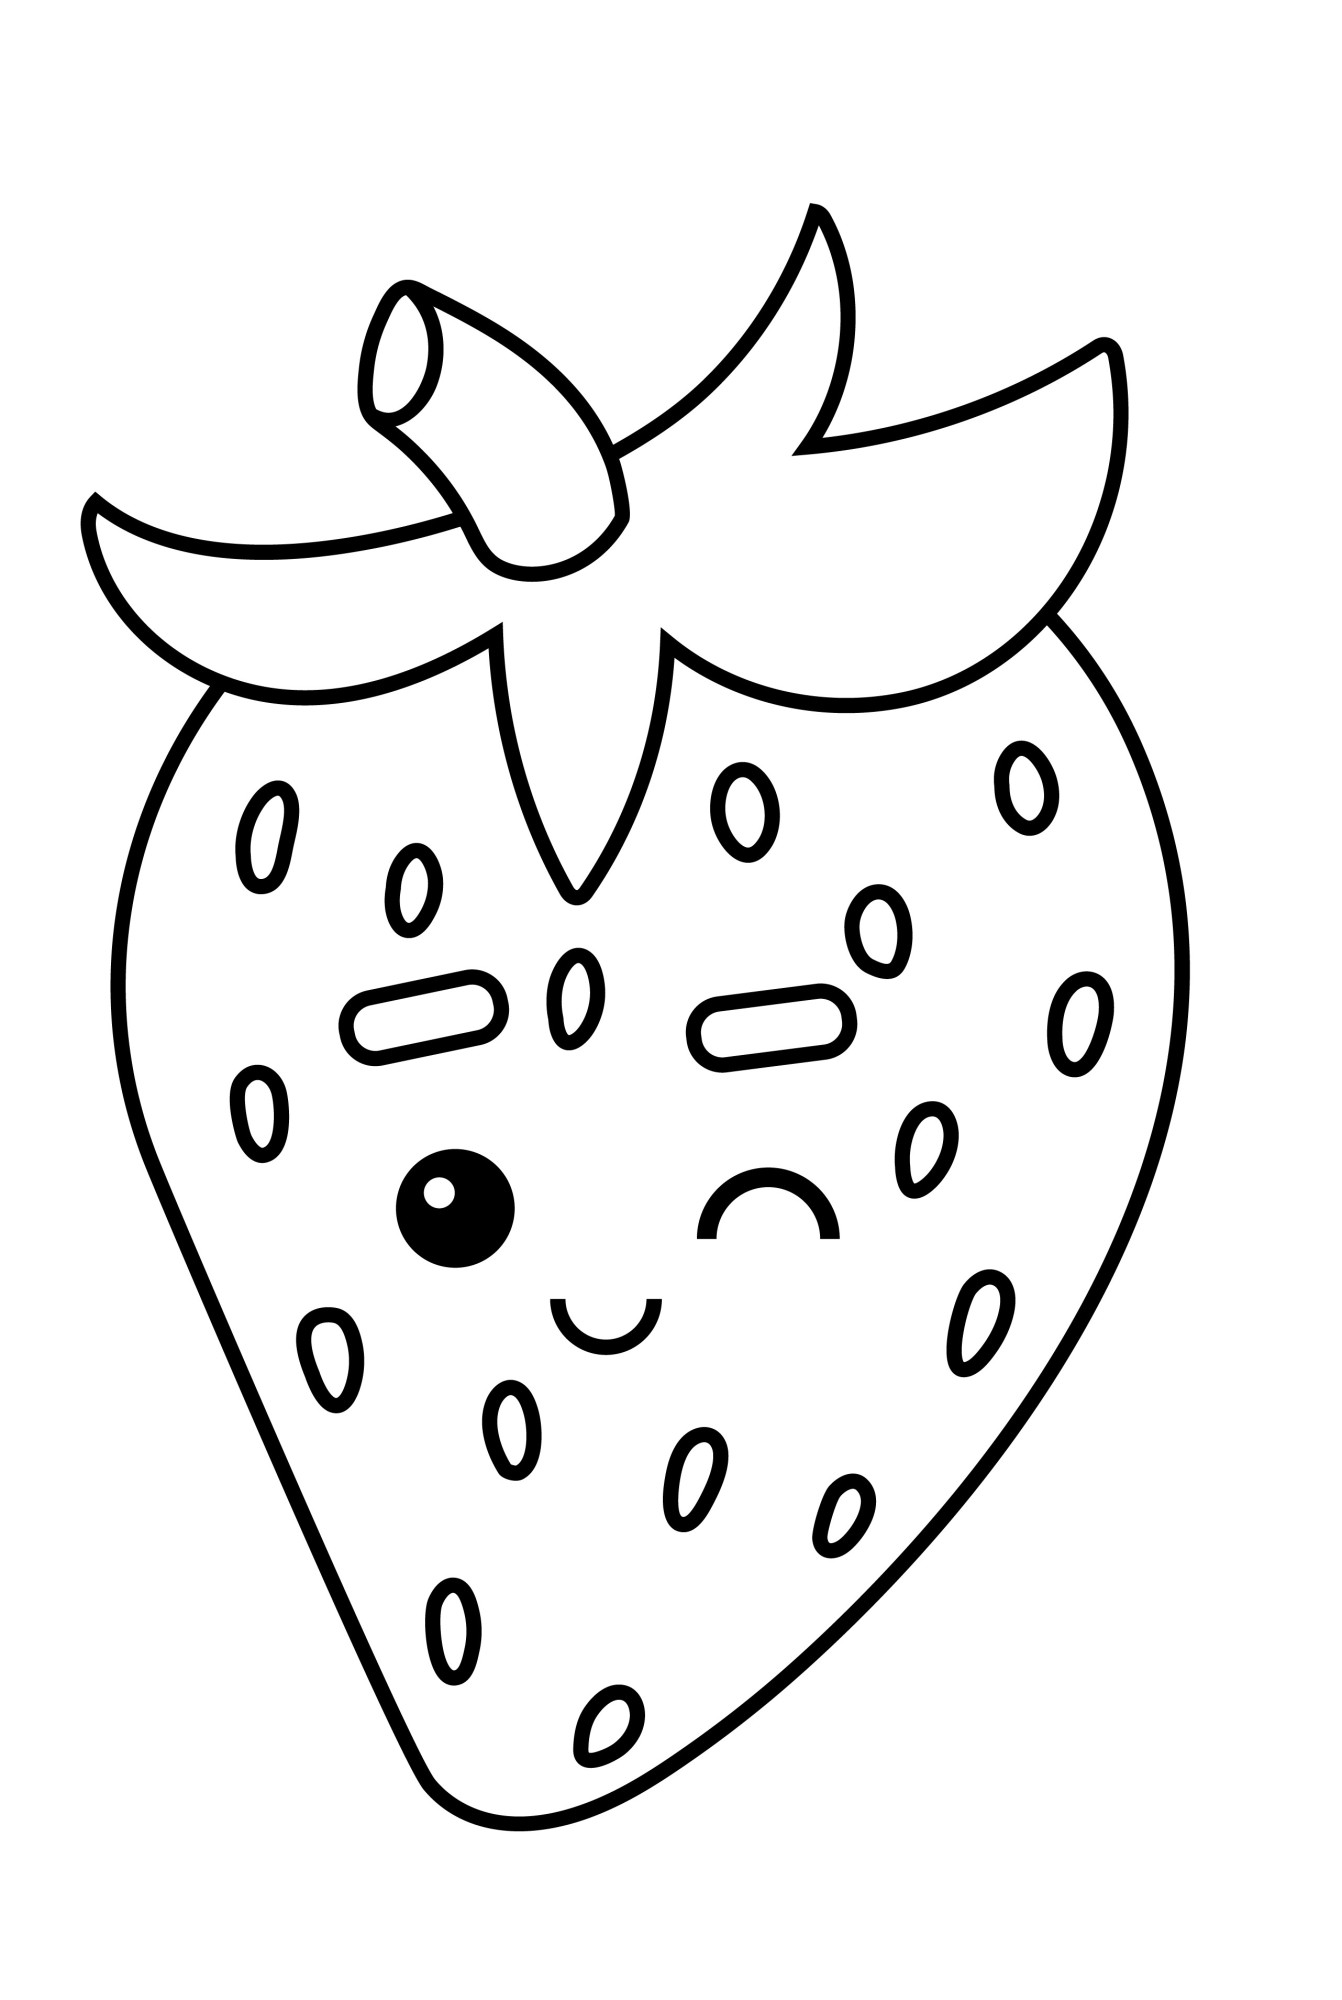 Раскраска для детей: ягода клубника подмигивает